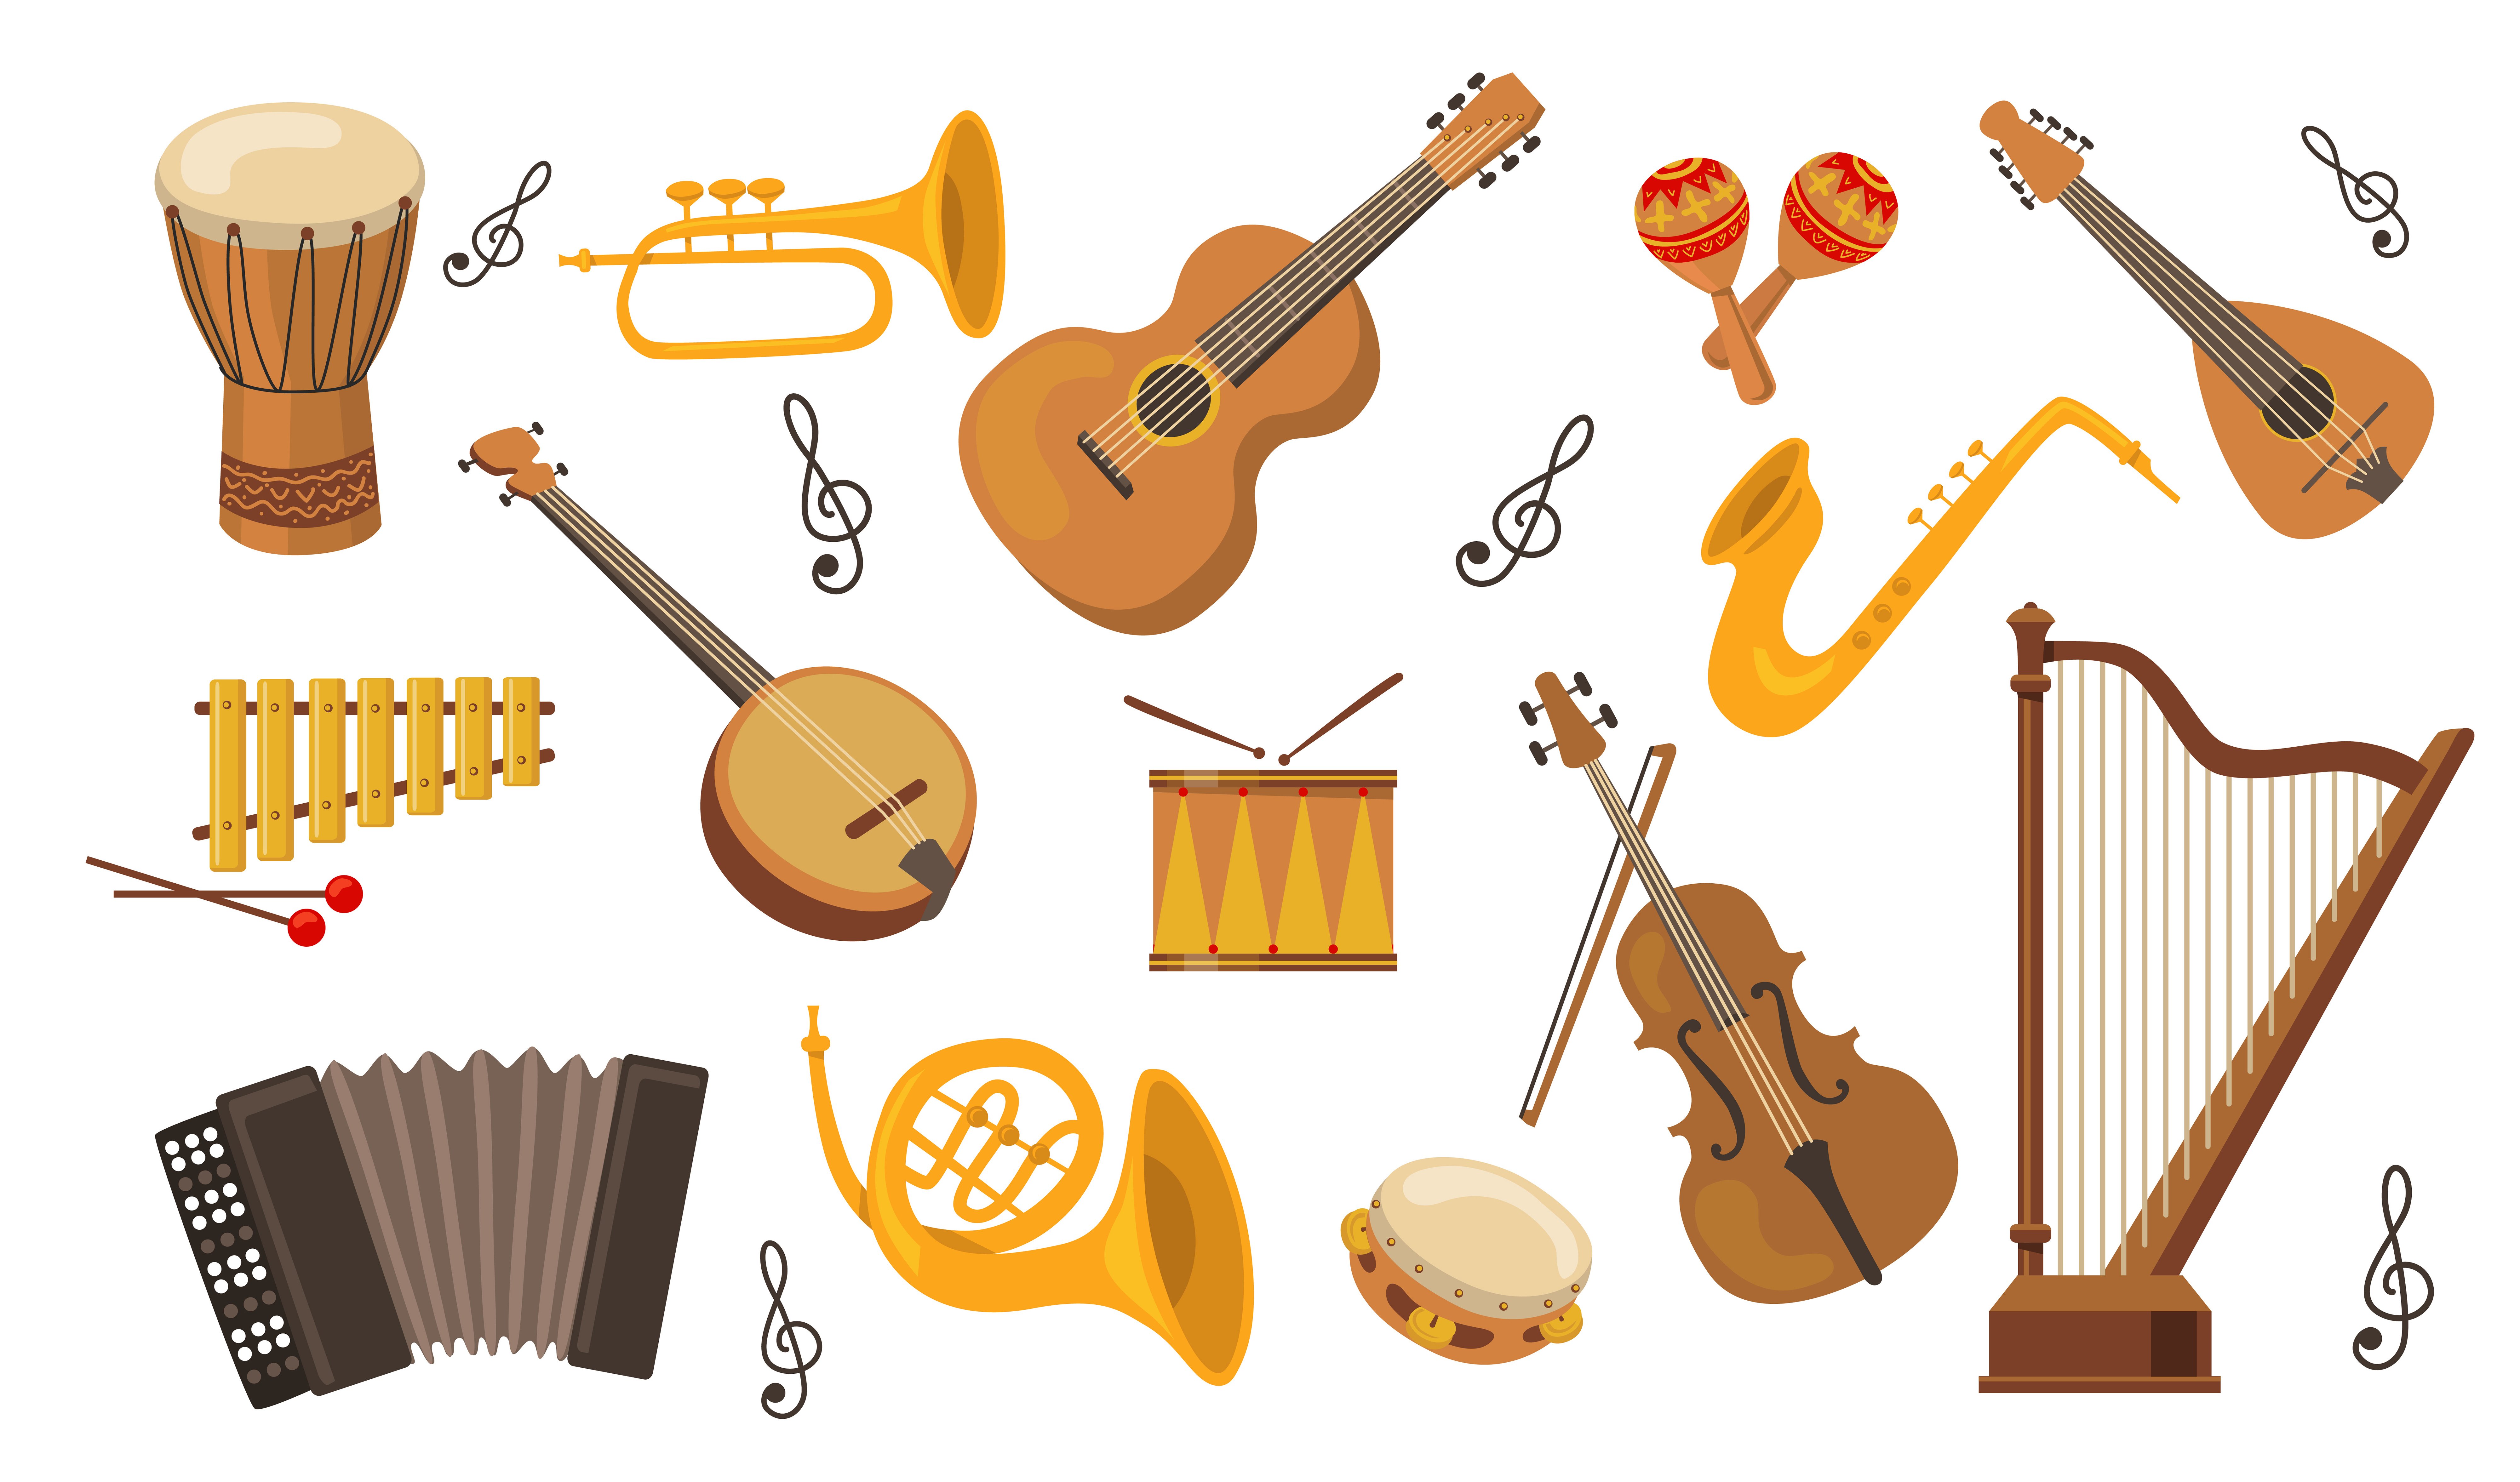 Музыкальный инструмент балла. Музыкальные инструменты иллюстрации. Музыкальные инструменты для малышей. Изображение музыкальных инструментов для детей. Классические музыкальные инструменты.